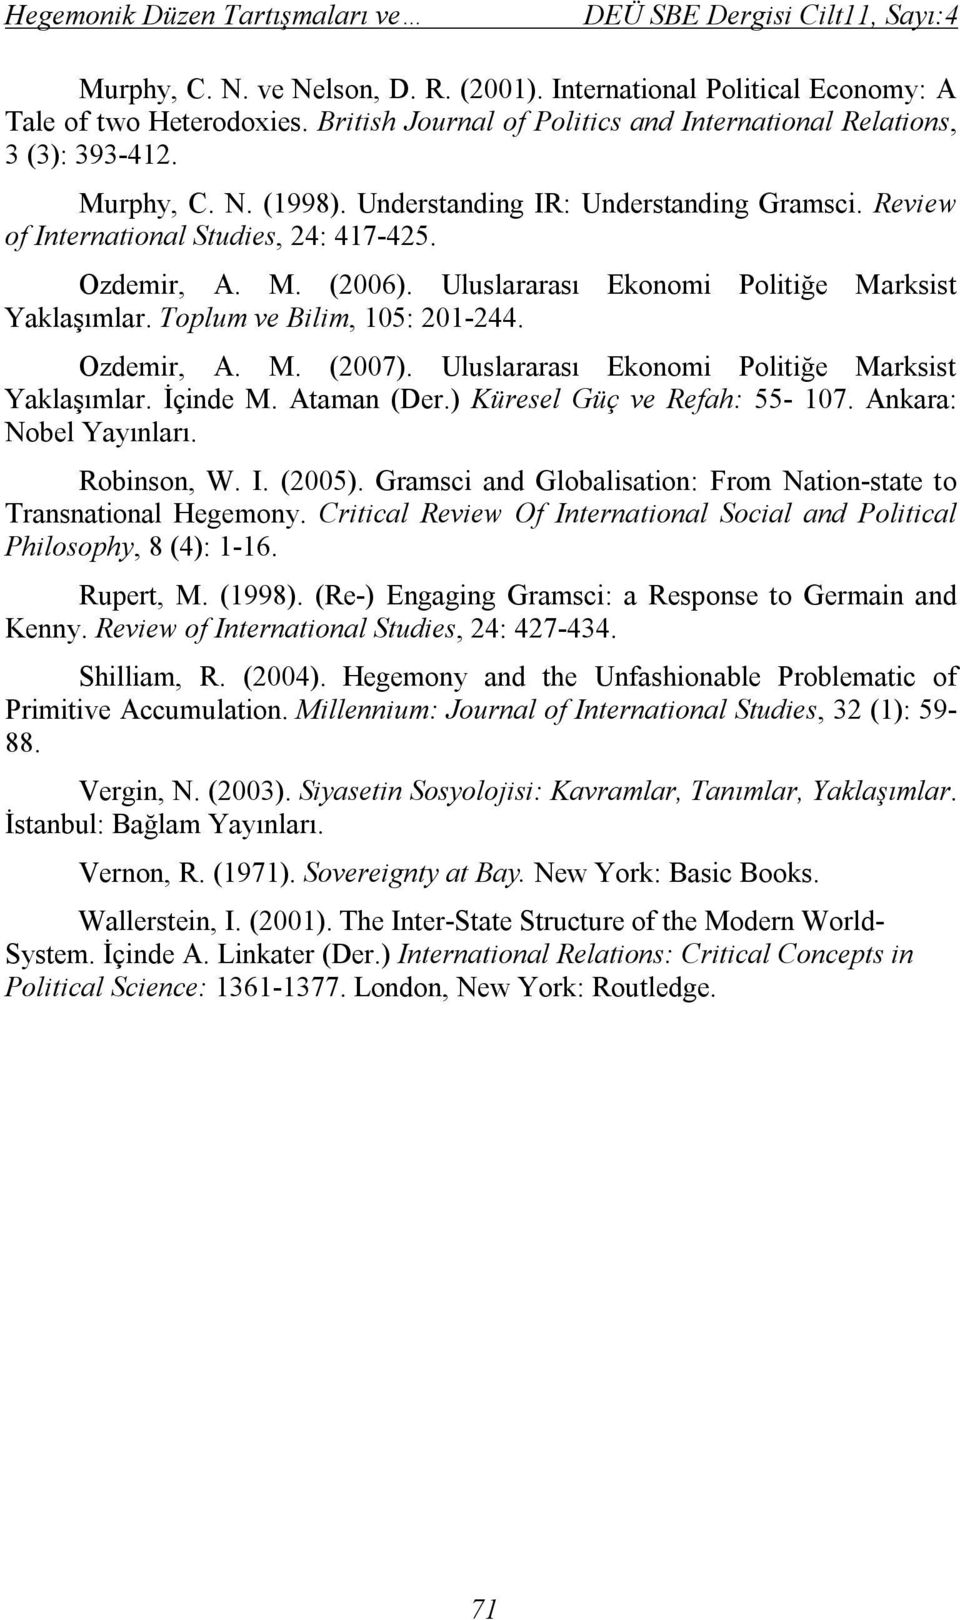 Uluslararası Ekonomi Politiğe Marksist Yaklaşımlar. Toplum ve Bilim, 105: 201-244. Ozdemir, A. M. (2007). Uluslararası Ekonomi Politiğe Marksist Yaklaşımlar. İçinde M. Ataman (Der.